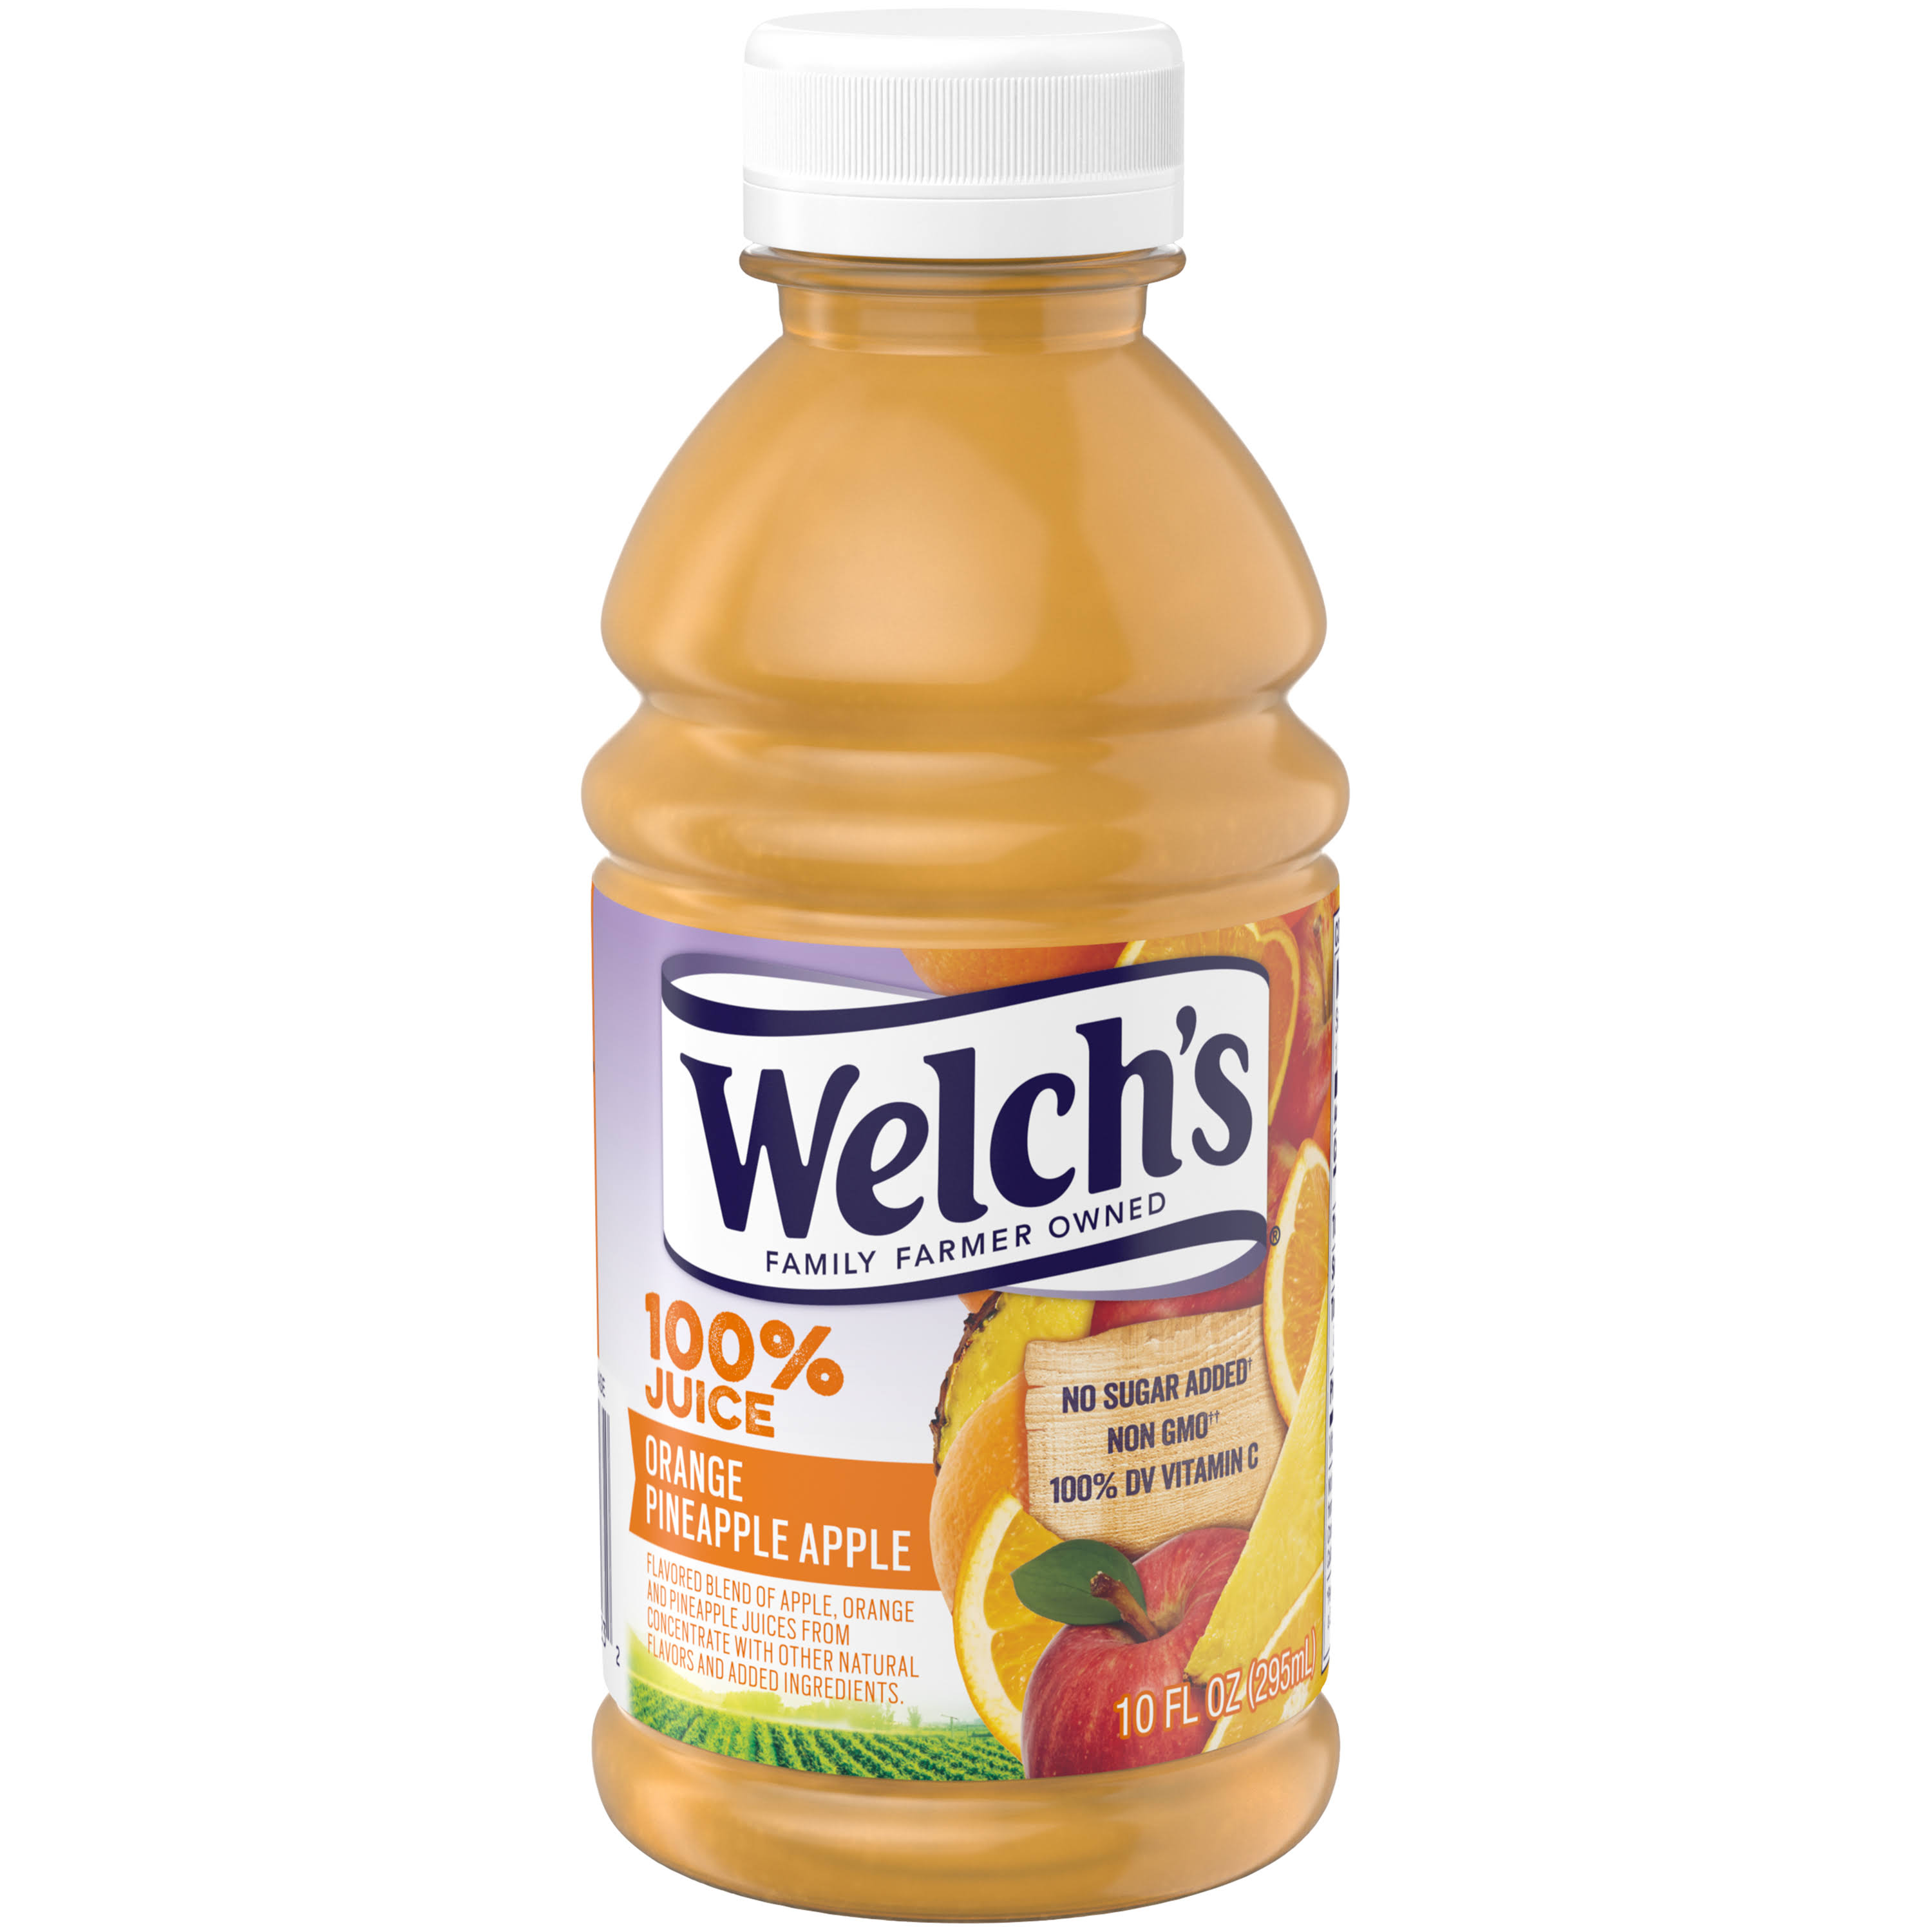 Welch's Orange Pineapple Apple 100% Juice 10 Fl. Oz. Bottle